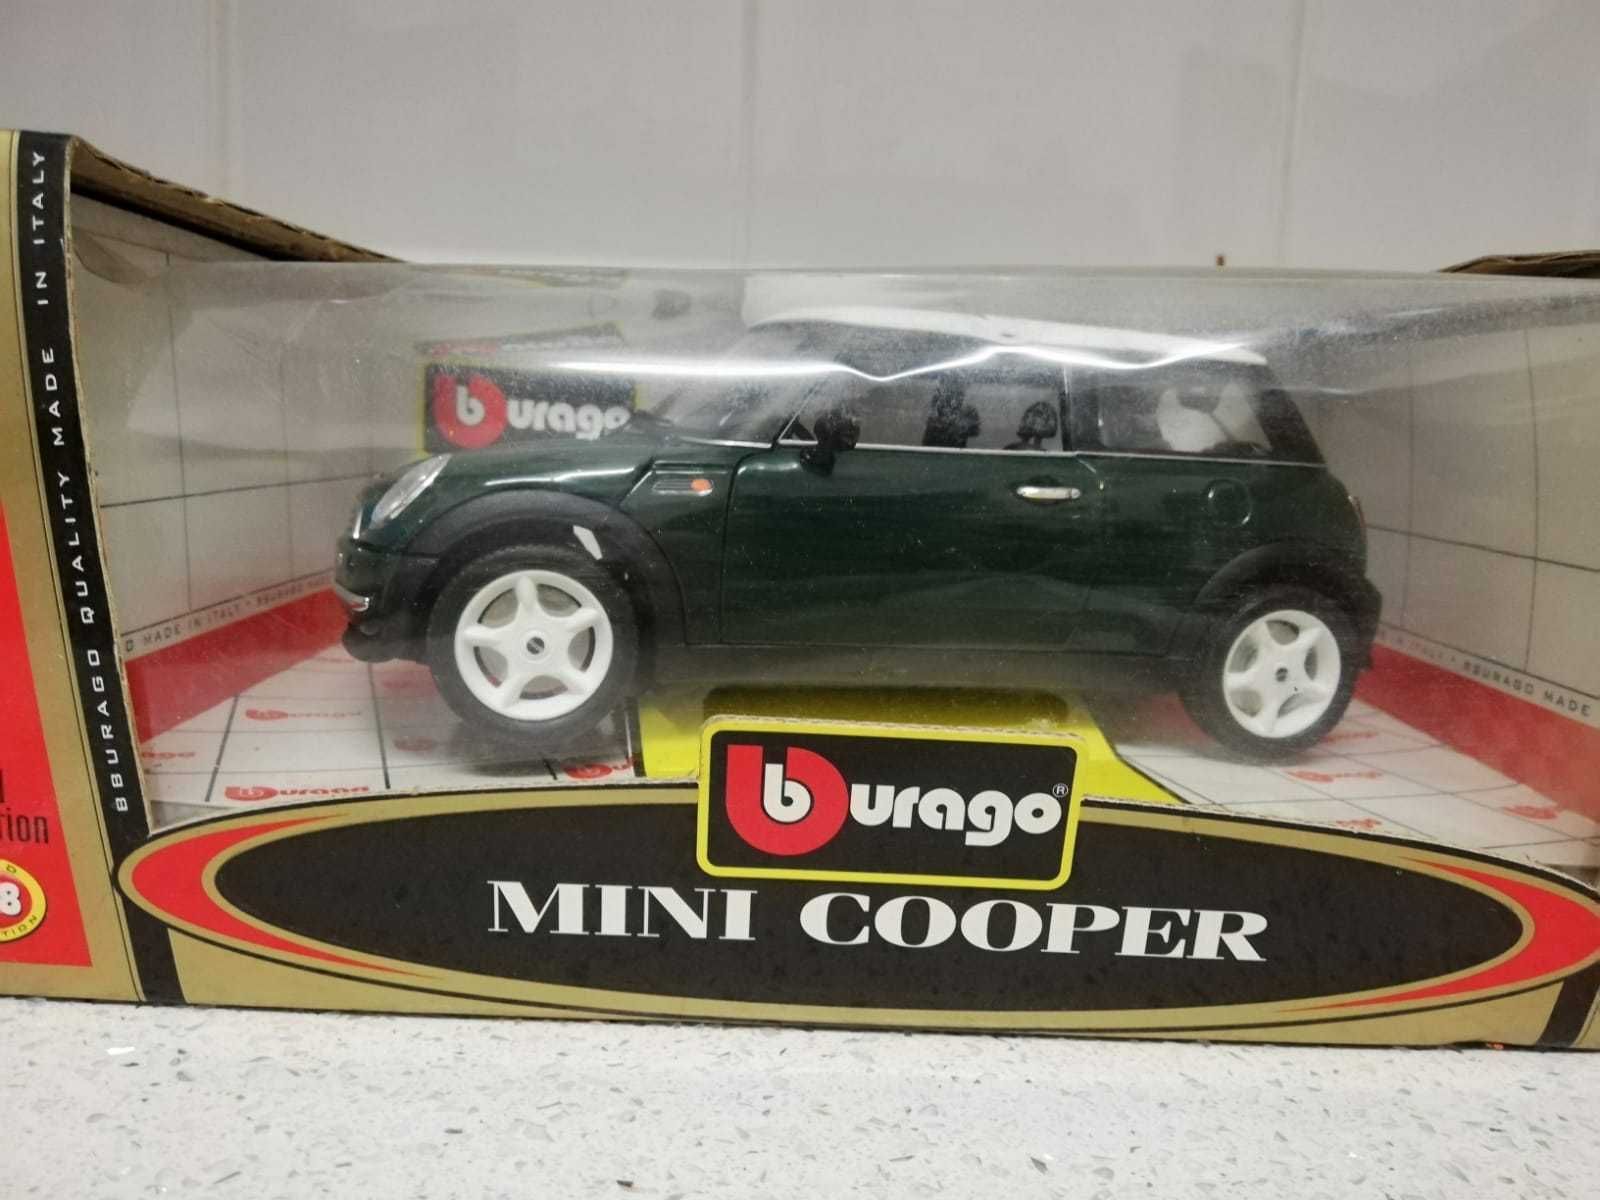 Mini Cooper Carro da Burago Escala 1/18 - Ano 2000